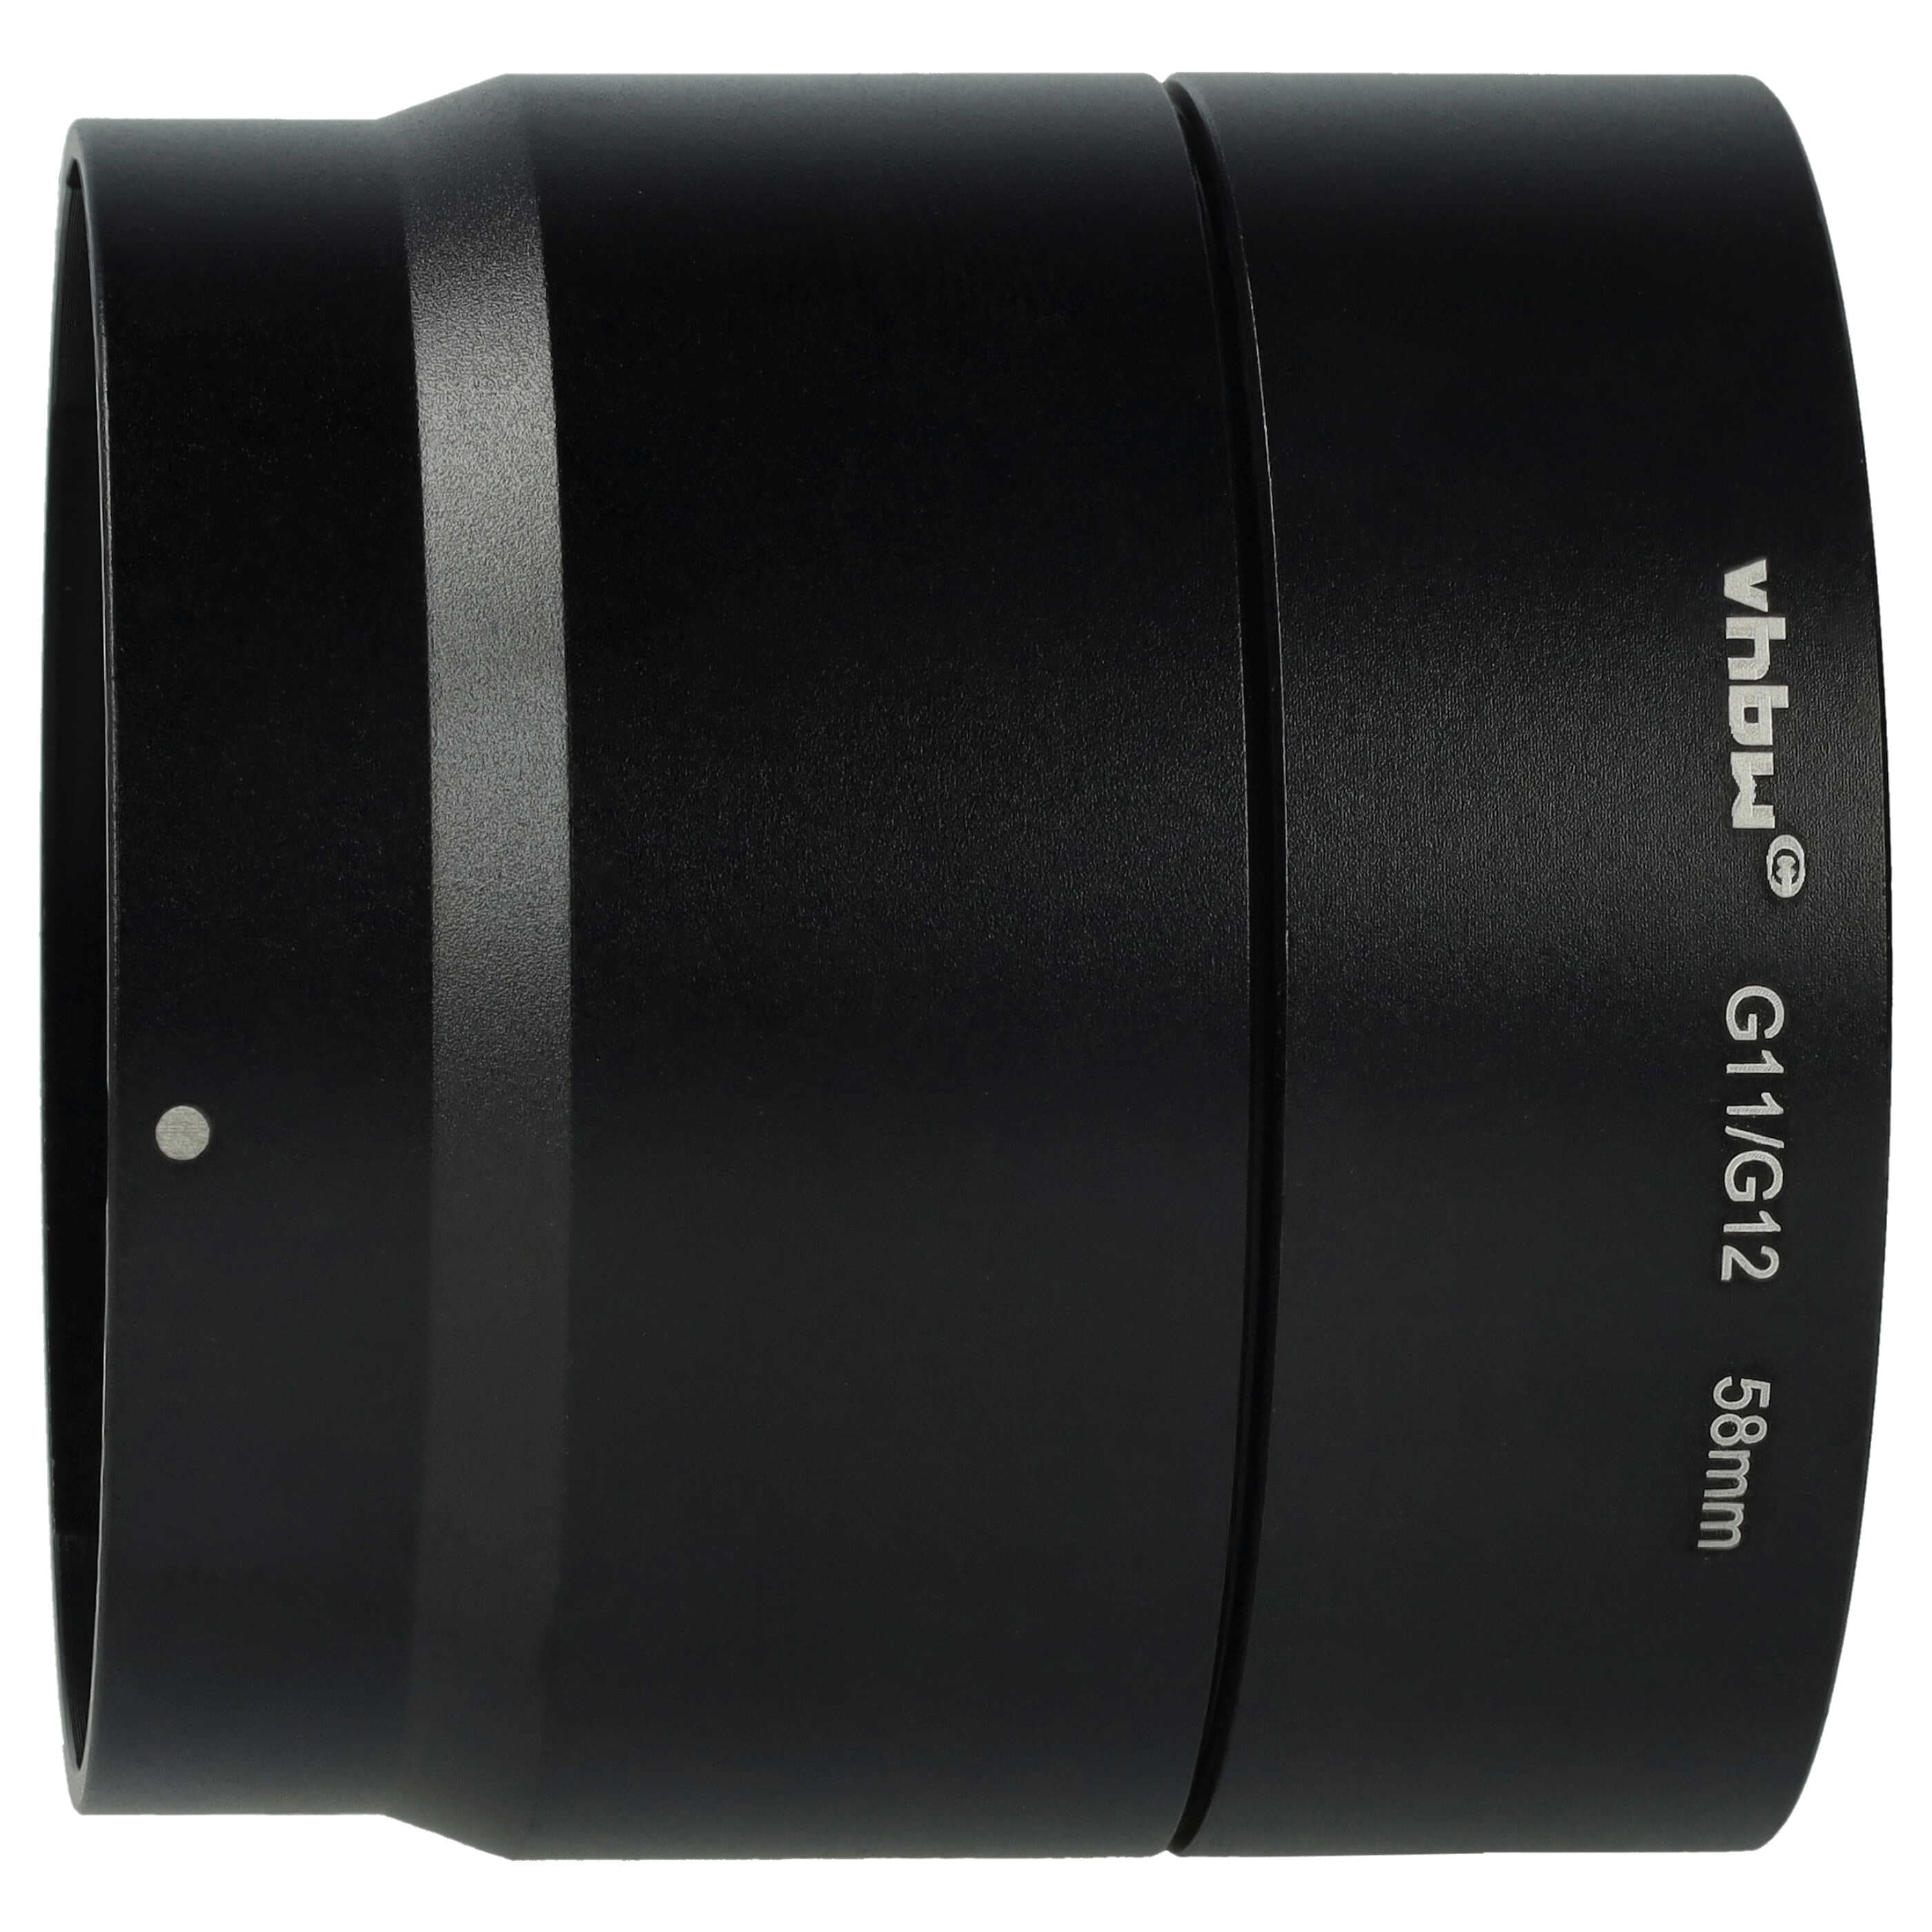 Redukcja filtrowa 58 mm w formie tulei do obiektywu aparatu Canon PowerShot G10, G11, G12 